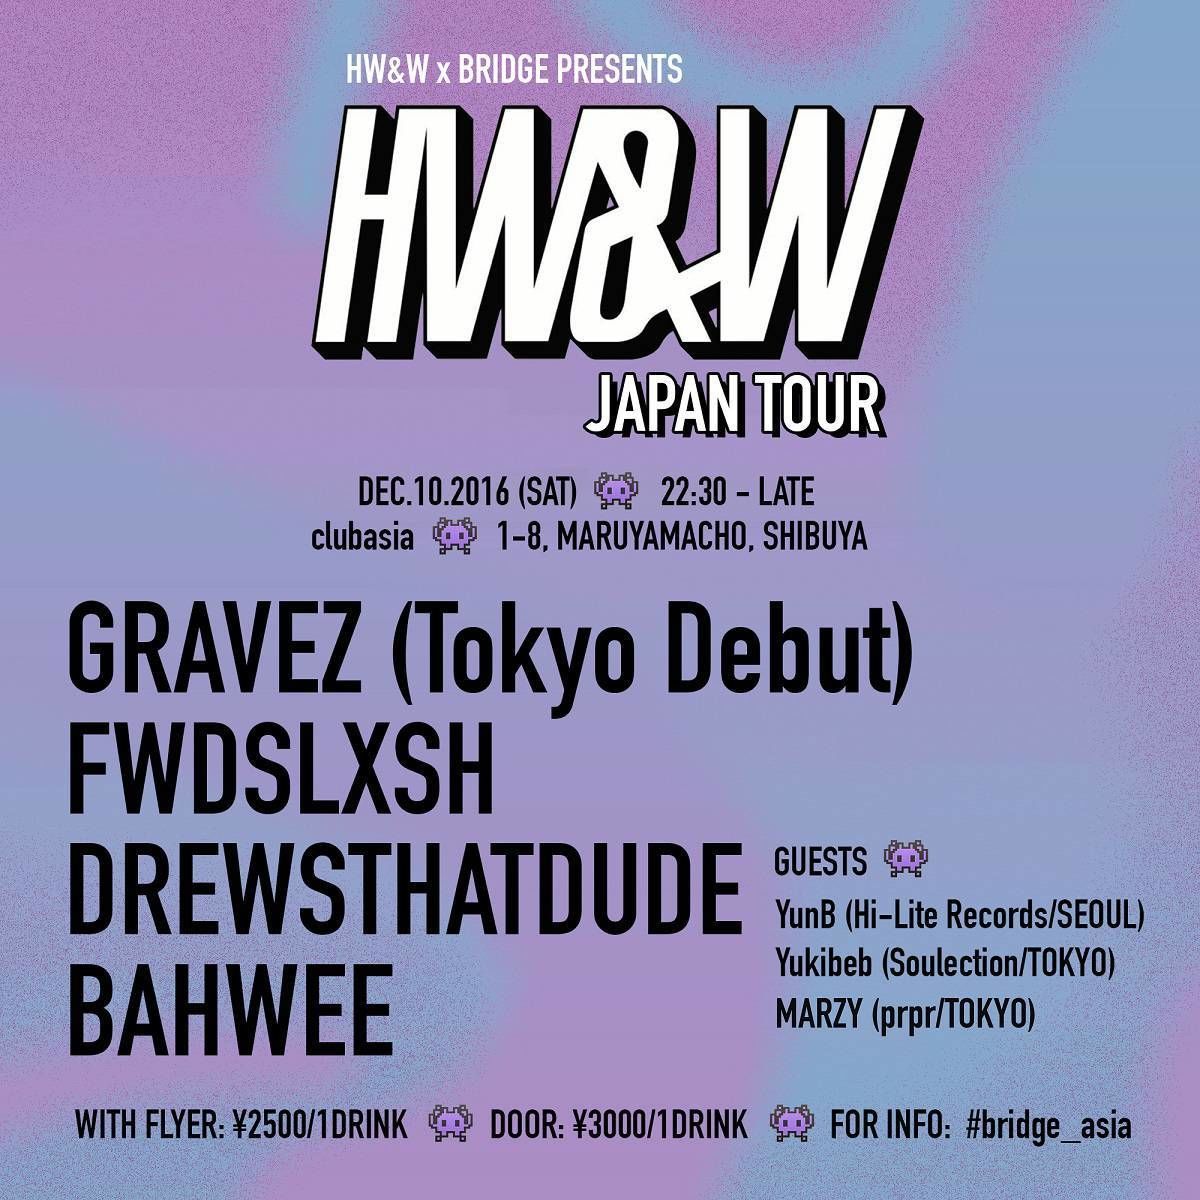 HW&W & BRIDGE Presents HW&W JAPAN TOUR